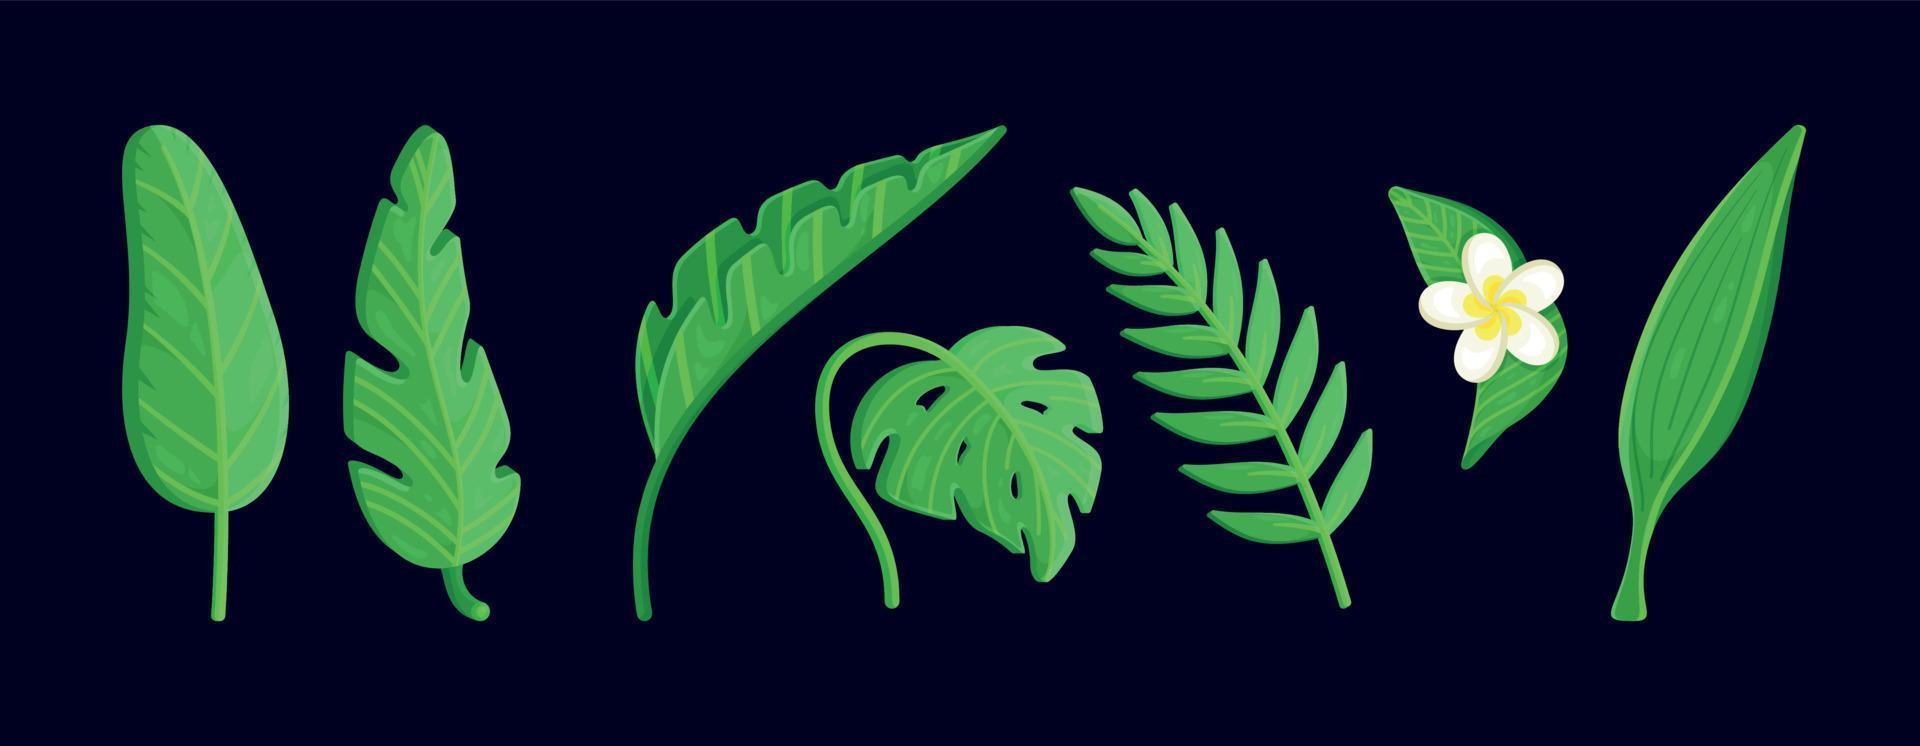 disegno di foglie tropicali. foglie di monstera e giungla di palma, fogliame esotico verde, collezione decorativa botanica naturale. vettore